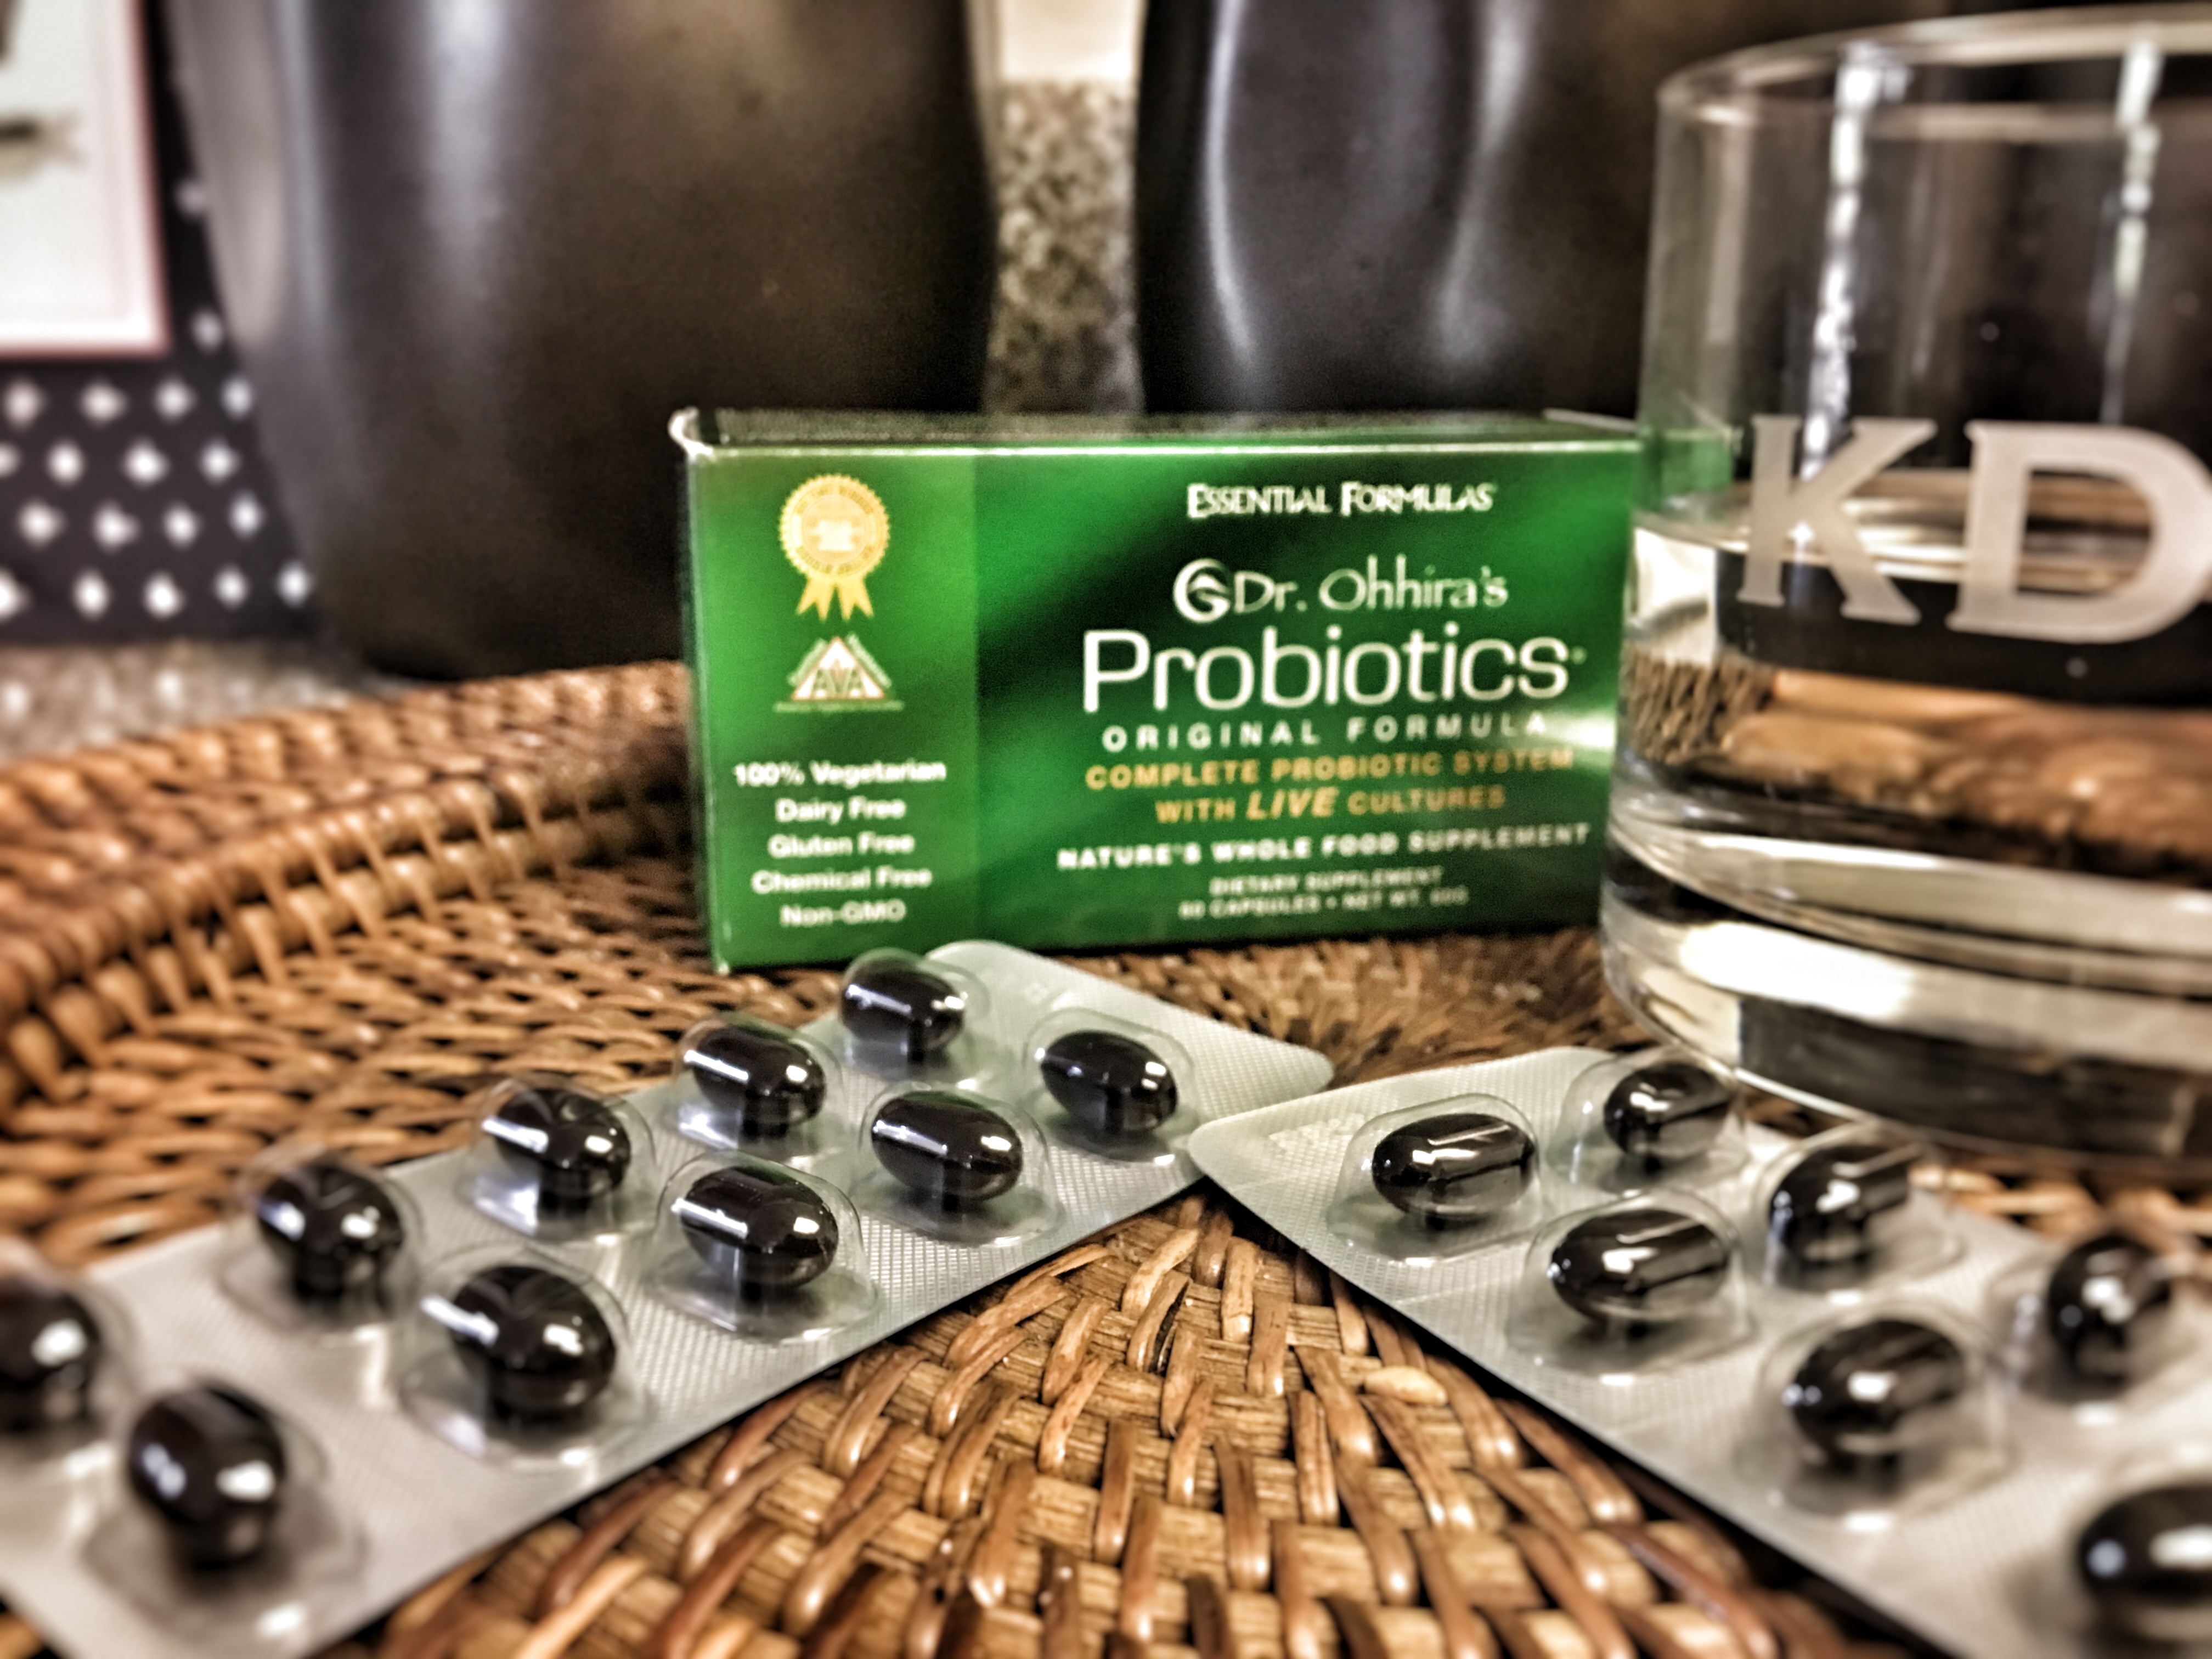 Dr. Ohhira’s Probiotics Is the Best Probiotic Supplement